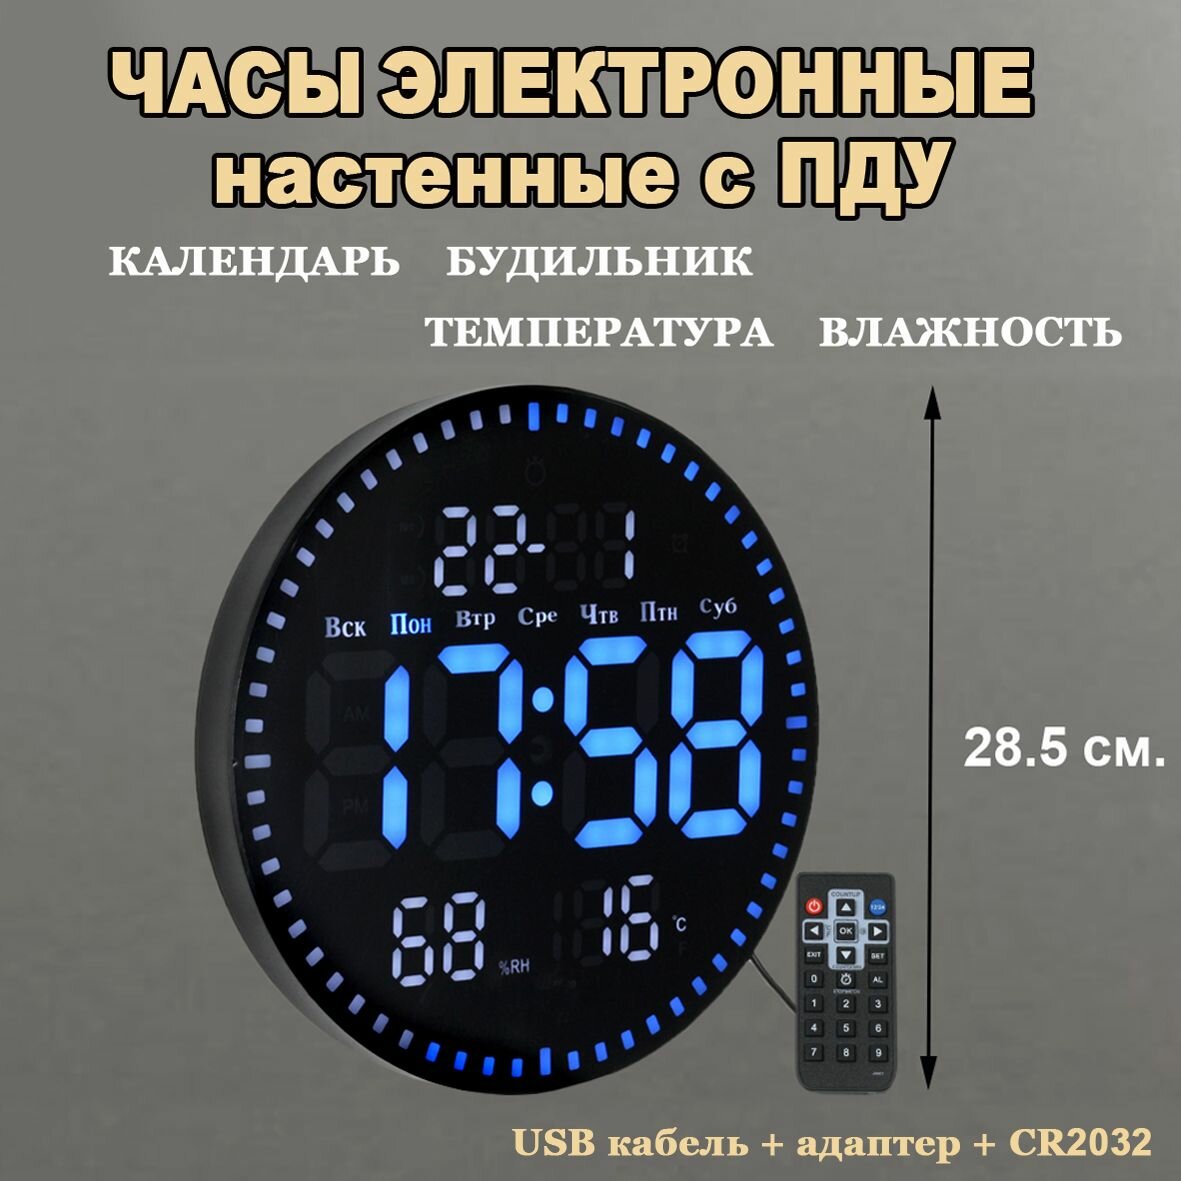 Часы электронные цифровые настенные, настольные с будильником, термометром и календарем. Черный корпус Синие + Белые цифры